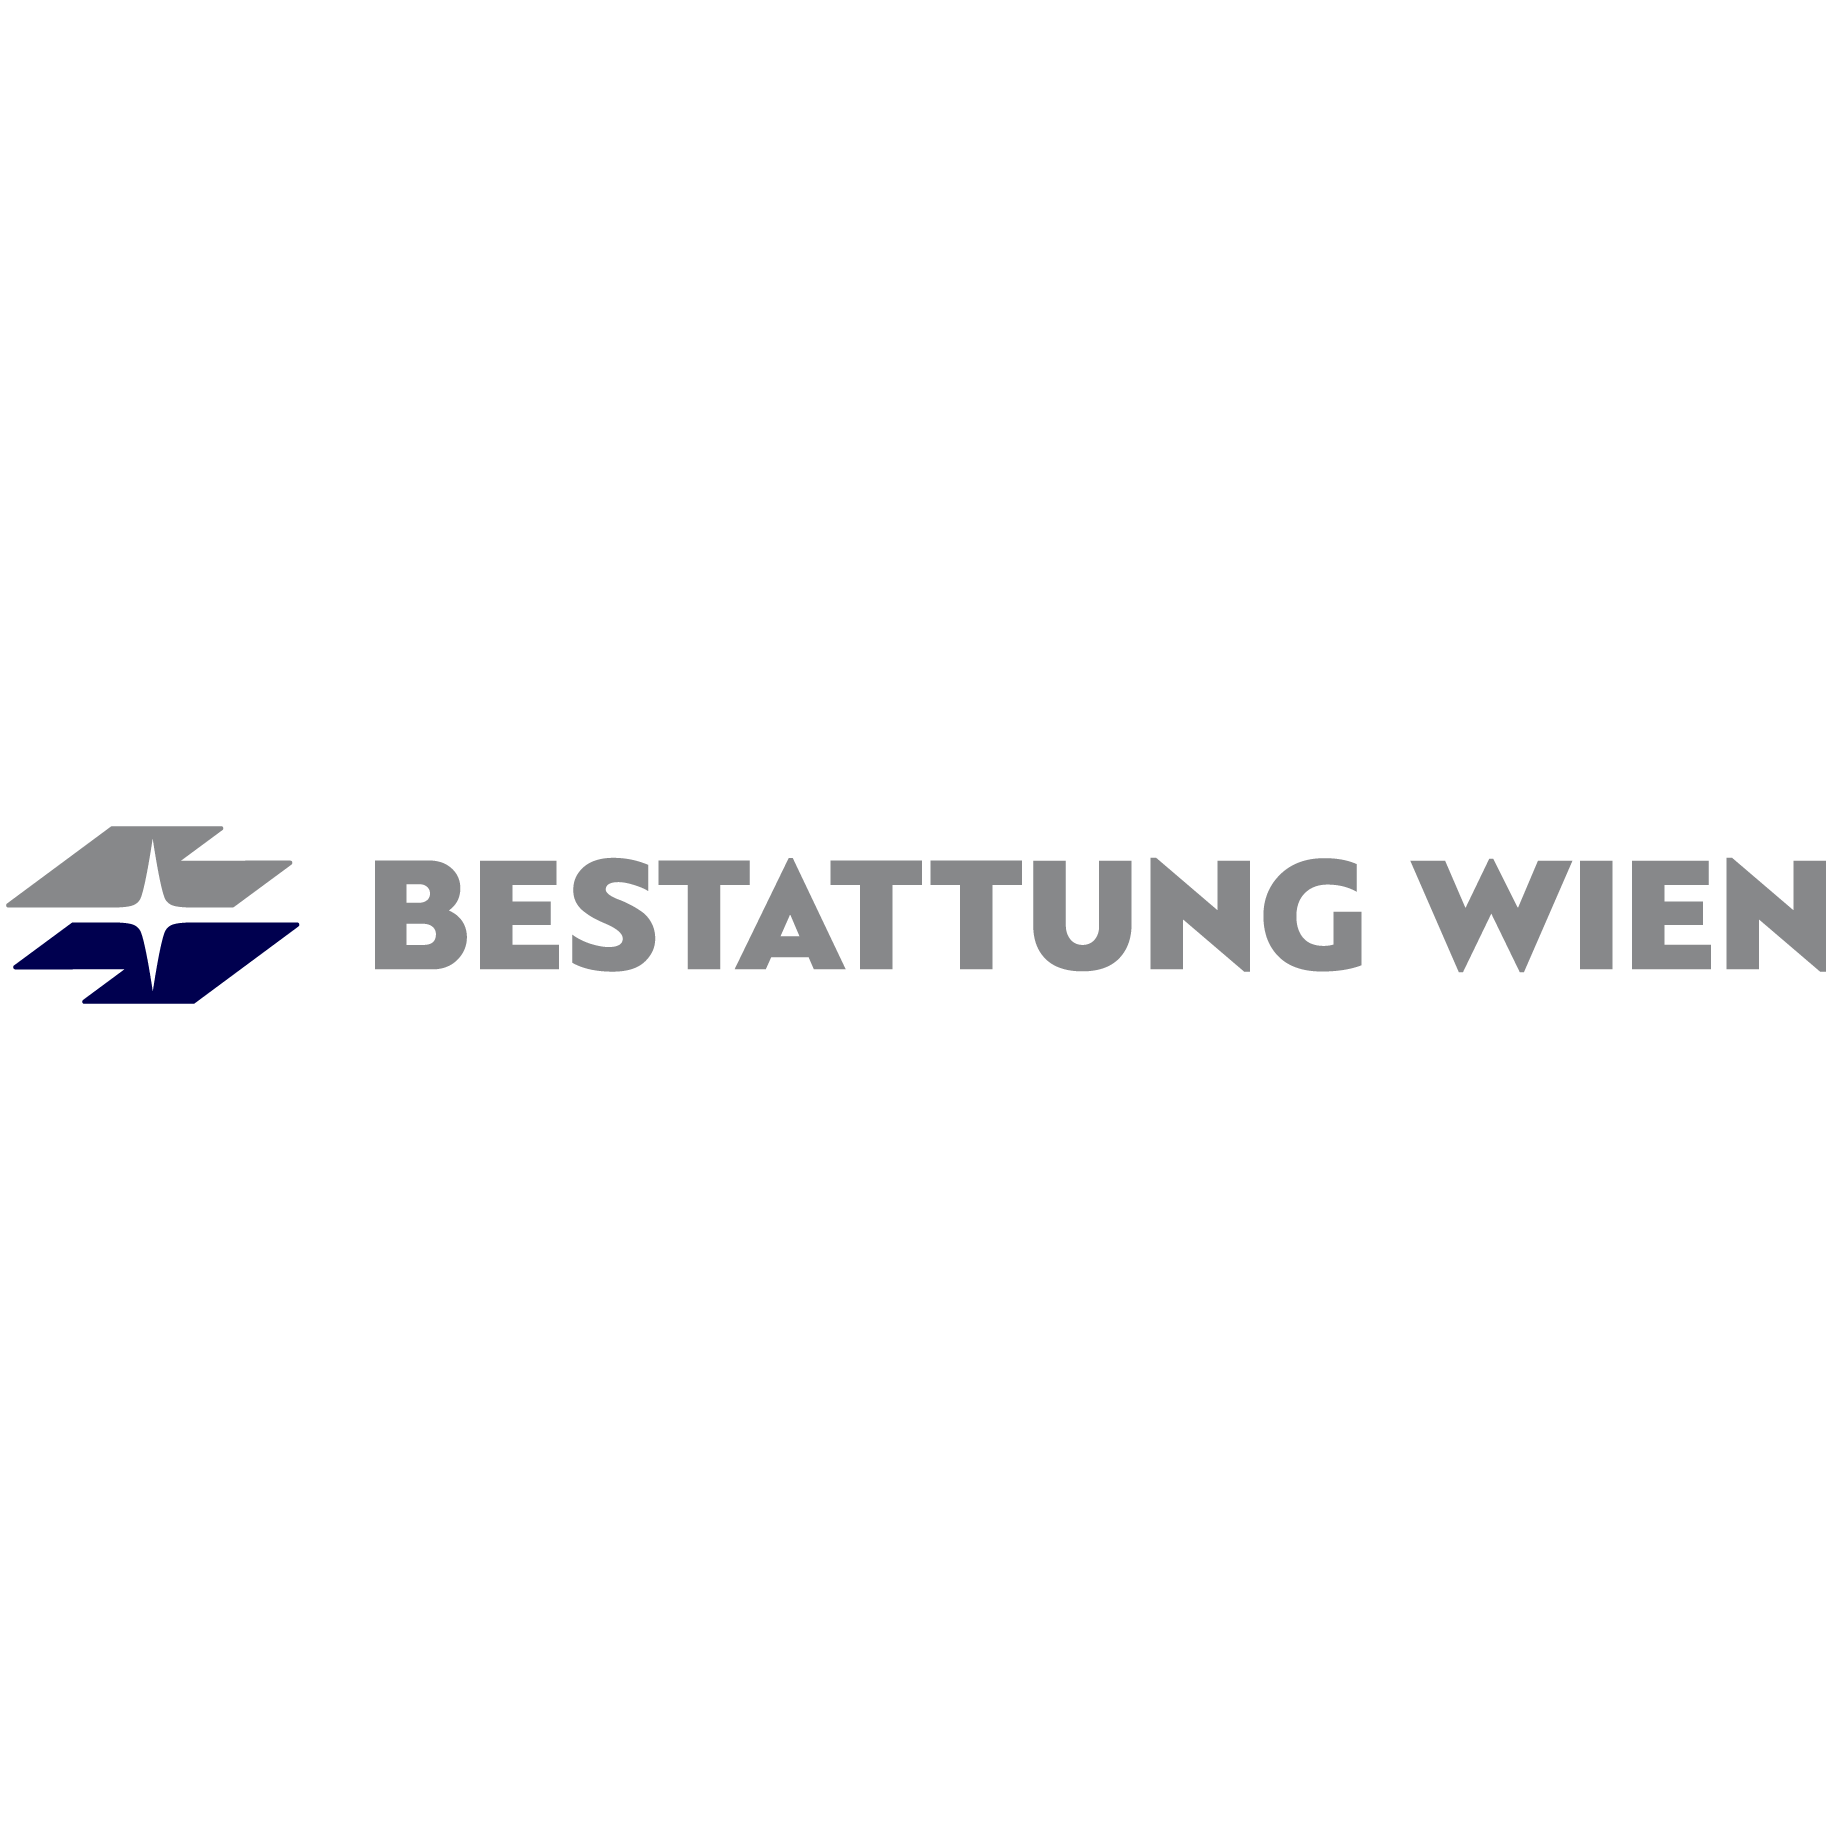 BESTATTUNG WIEN - Kundenservice Brigittenau Logo